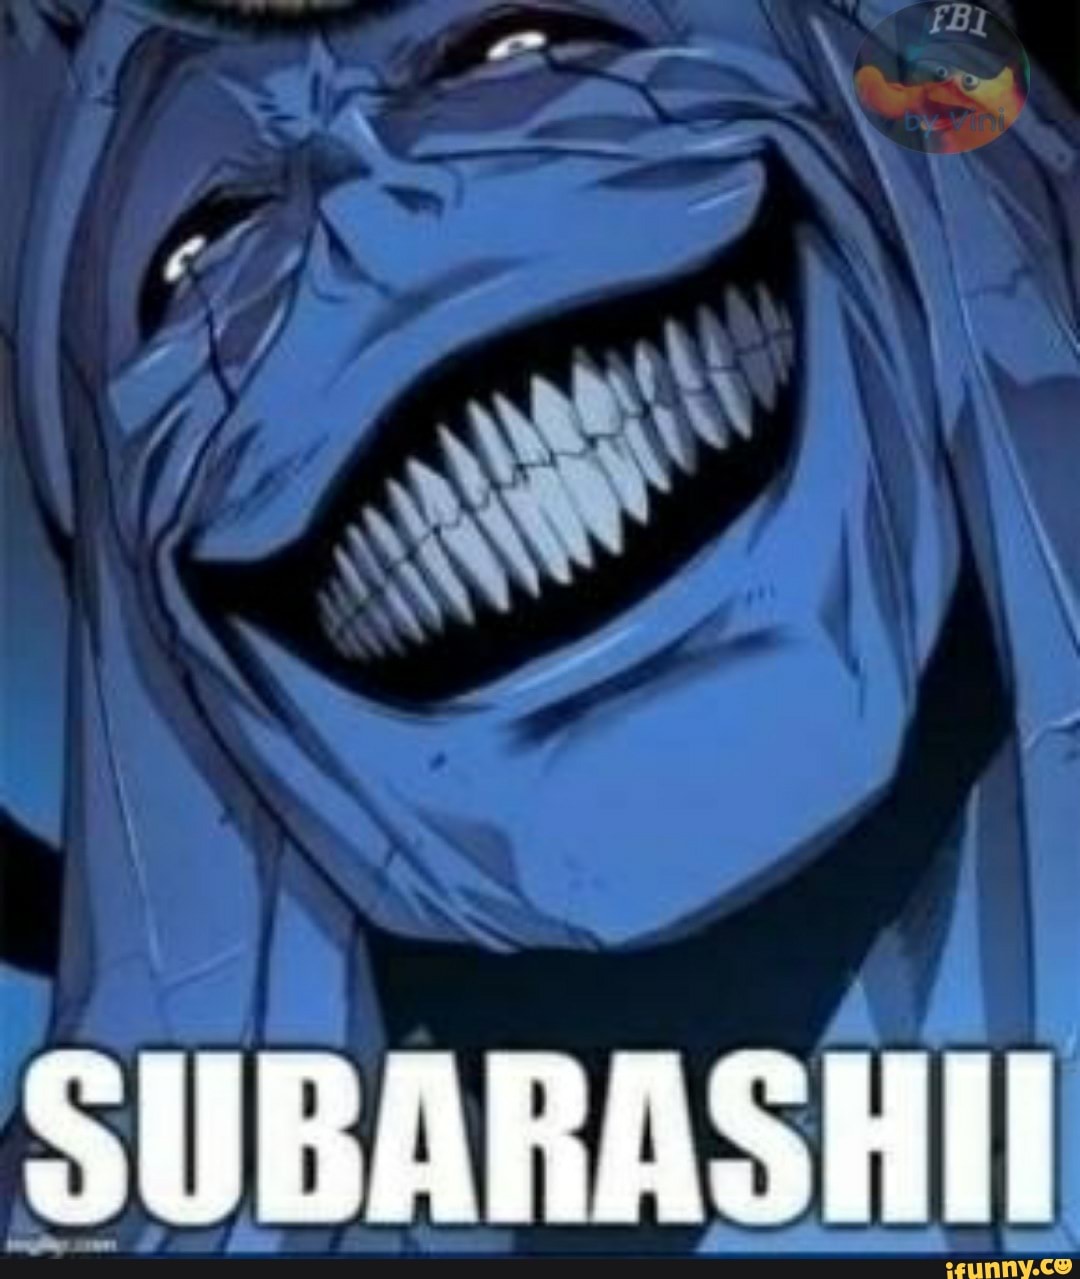 Subarashii memes. Best Collection of funny Subarashii pictures on iFunny  Brazil